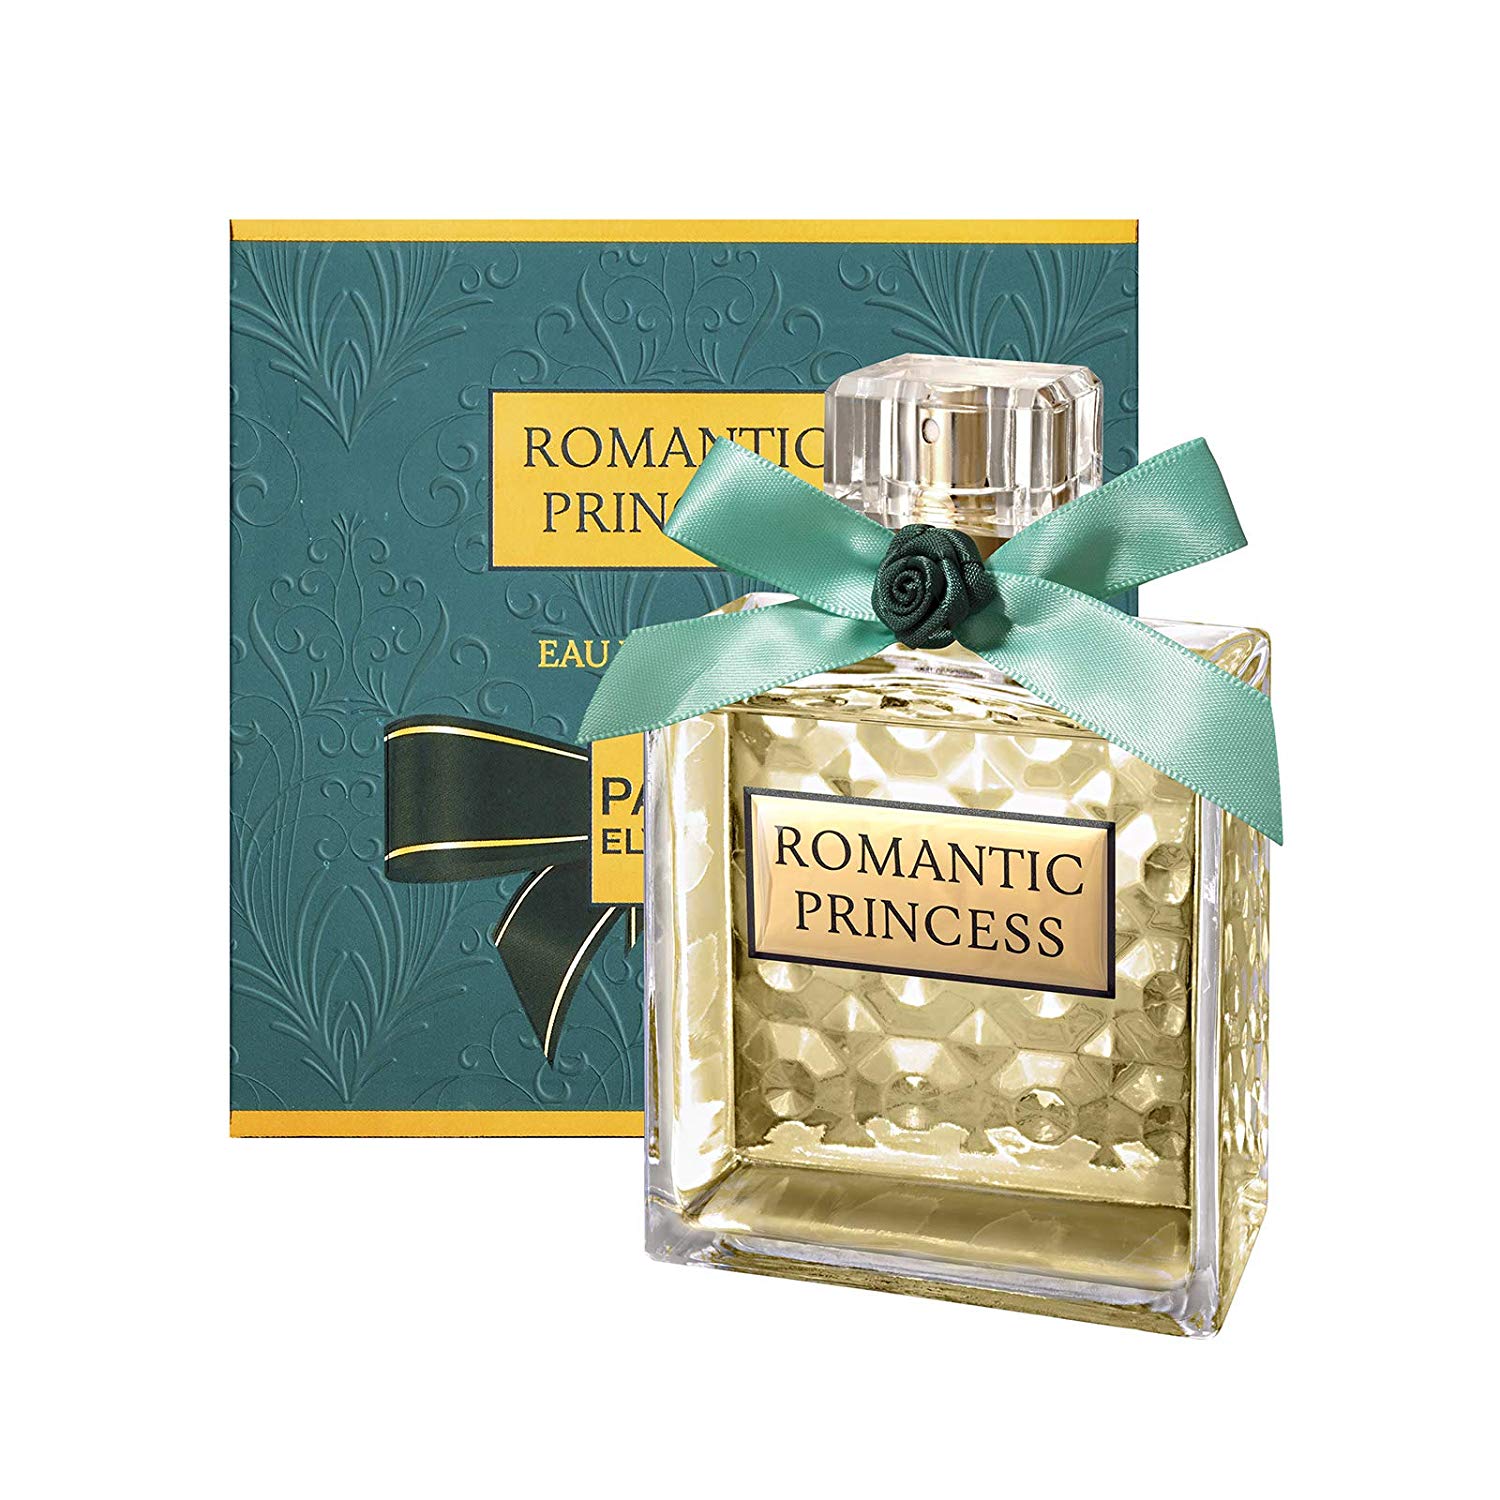 Resenha Romantic Princess Paris Elysees perfume feminino